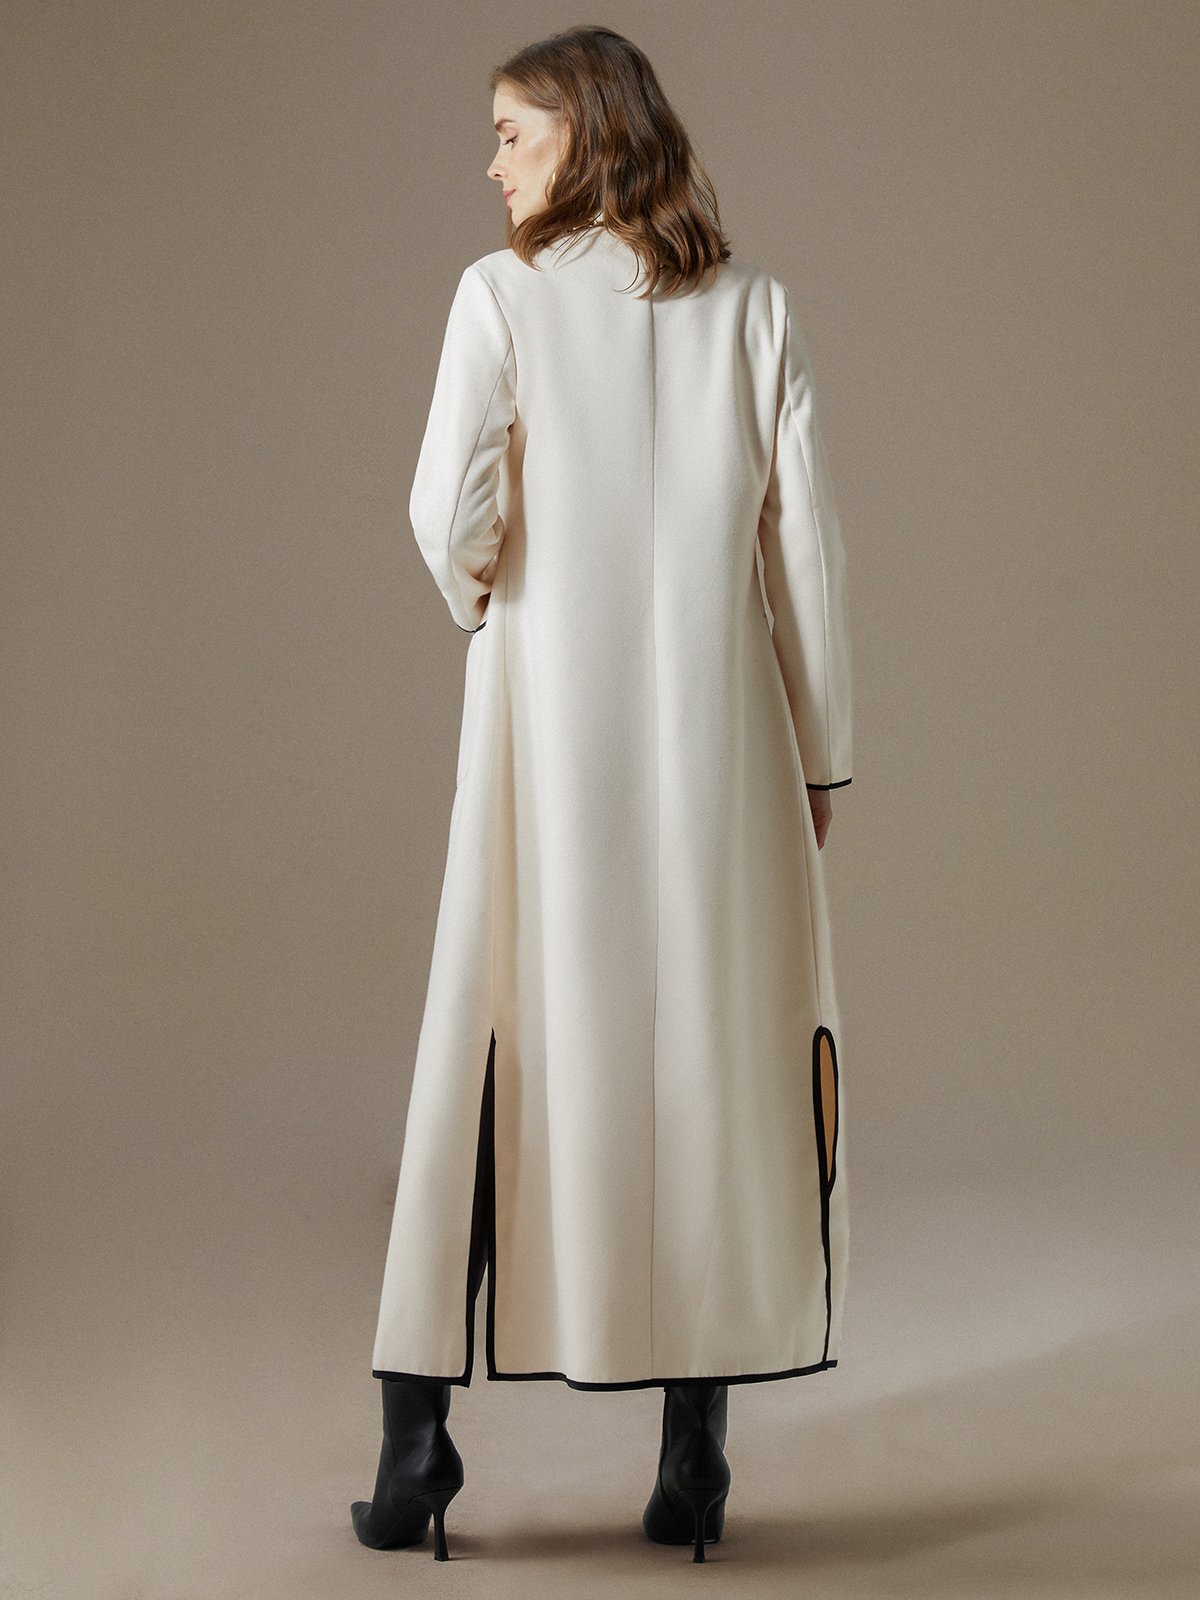 Loose Simple Long Sleeve Overcoat | stylewe